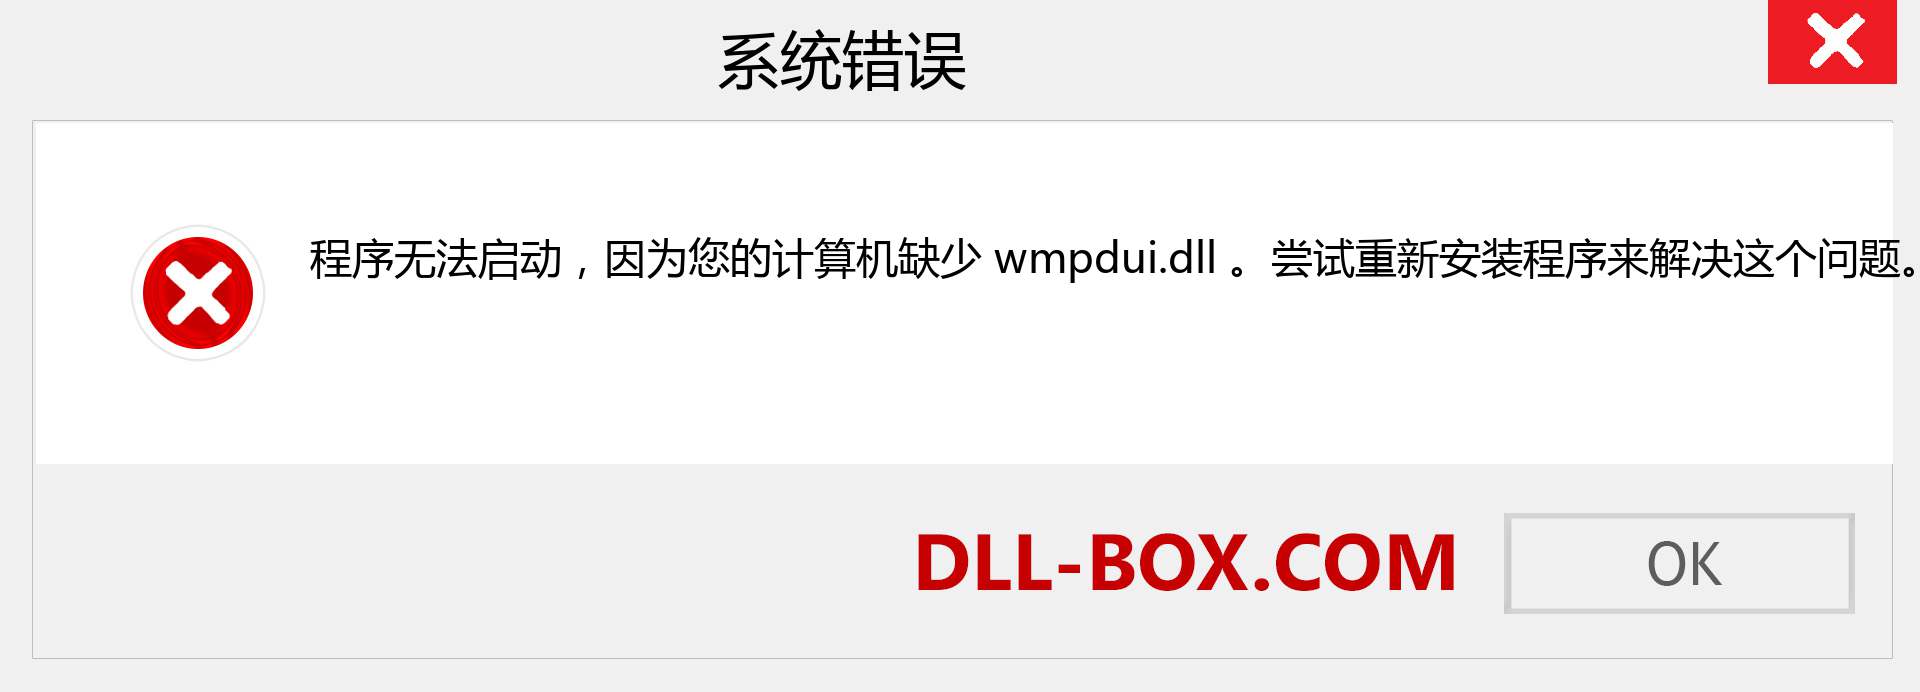 wmpdui.dll 文件丢失？。 适用于 Windows 7、8、10 的下载 - 修复 Windows、照片、图像上的 wmpdui dll 丢失错误